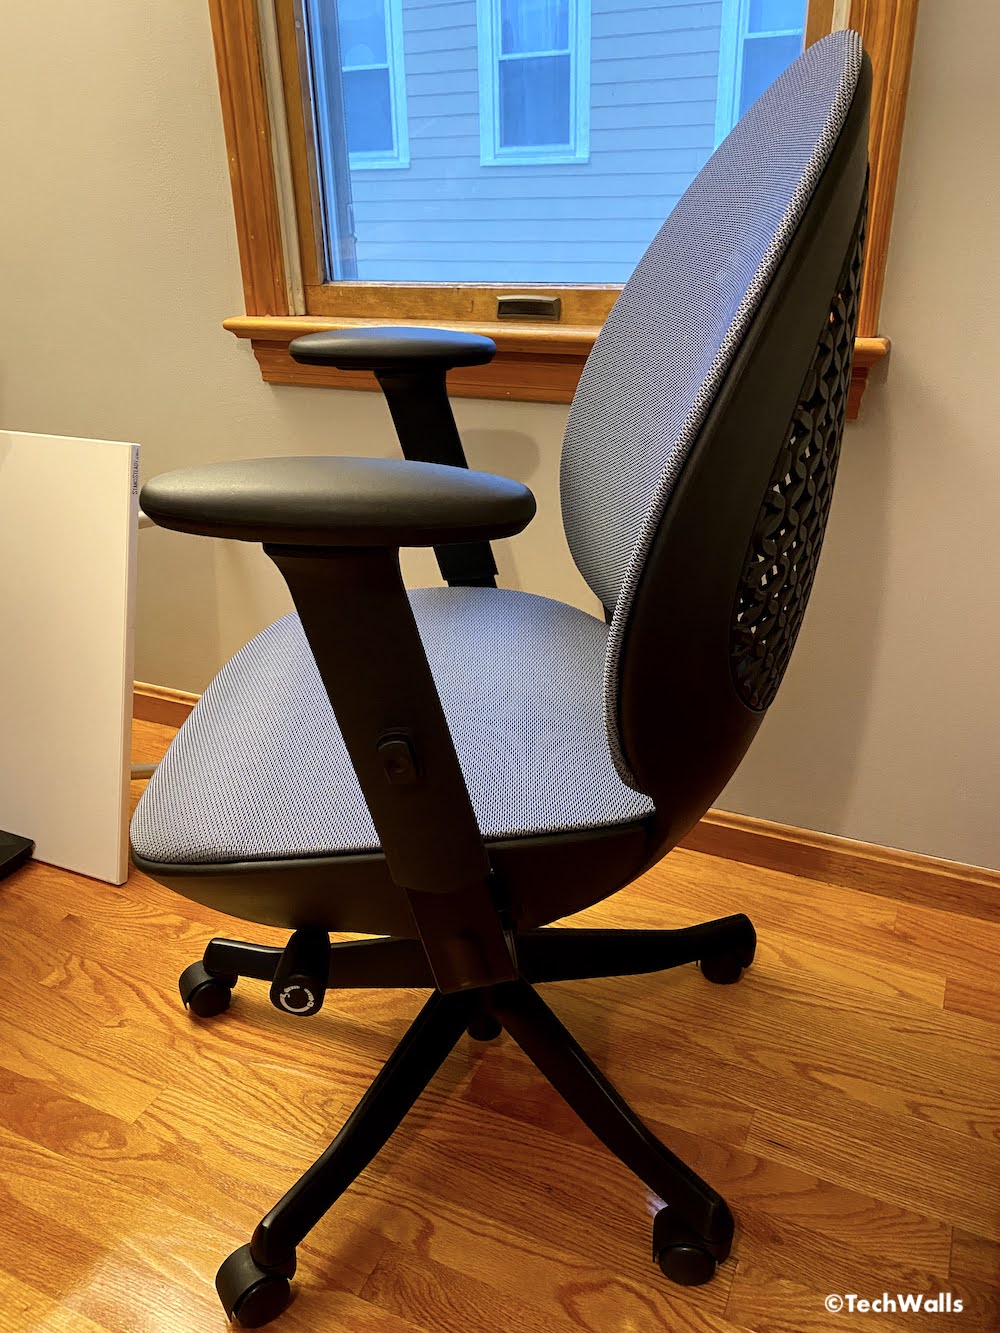 Revisión de la silla ergonómica de oficina autónoma AvoChair: una silla bien construida y de aspecto lindo, pero ...